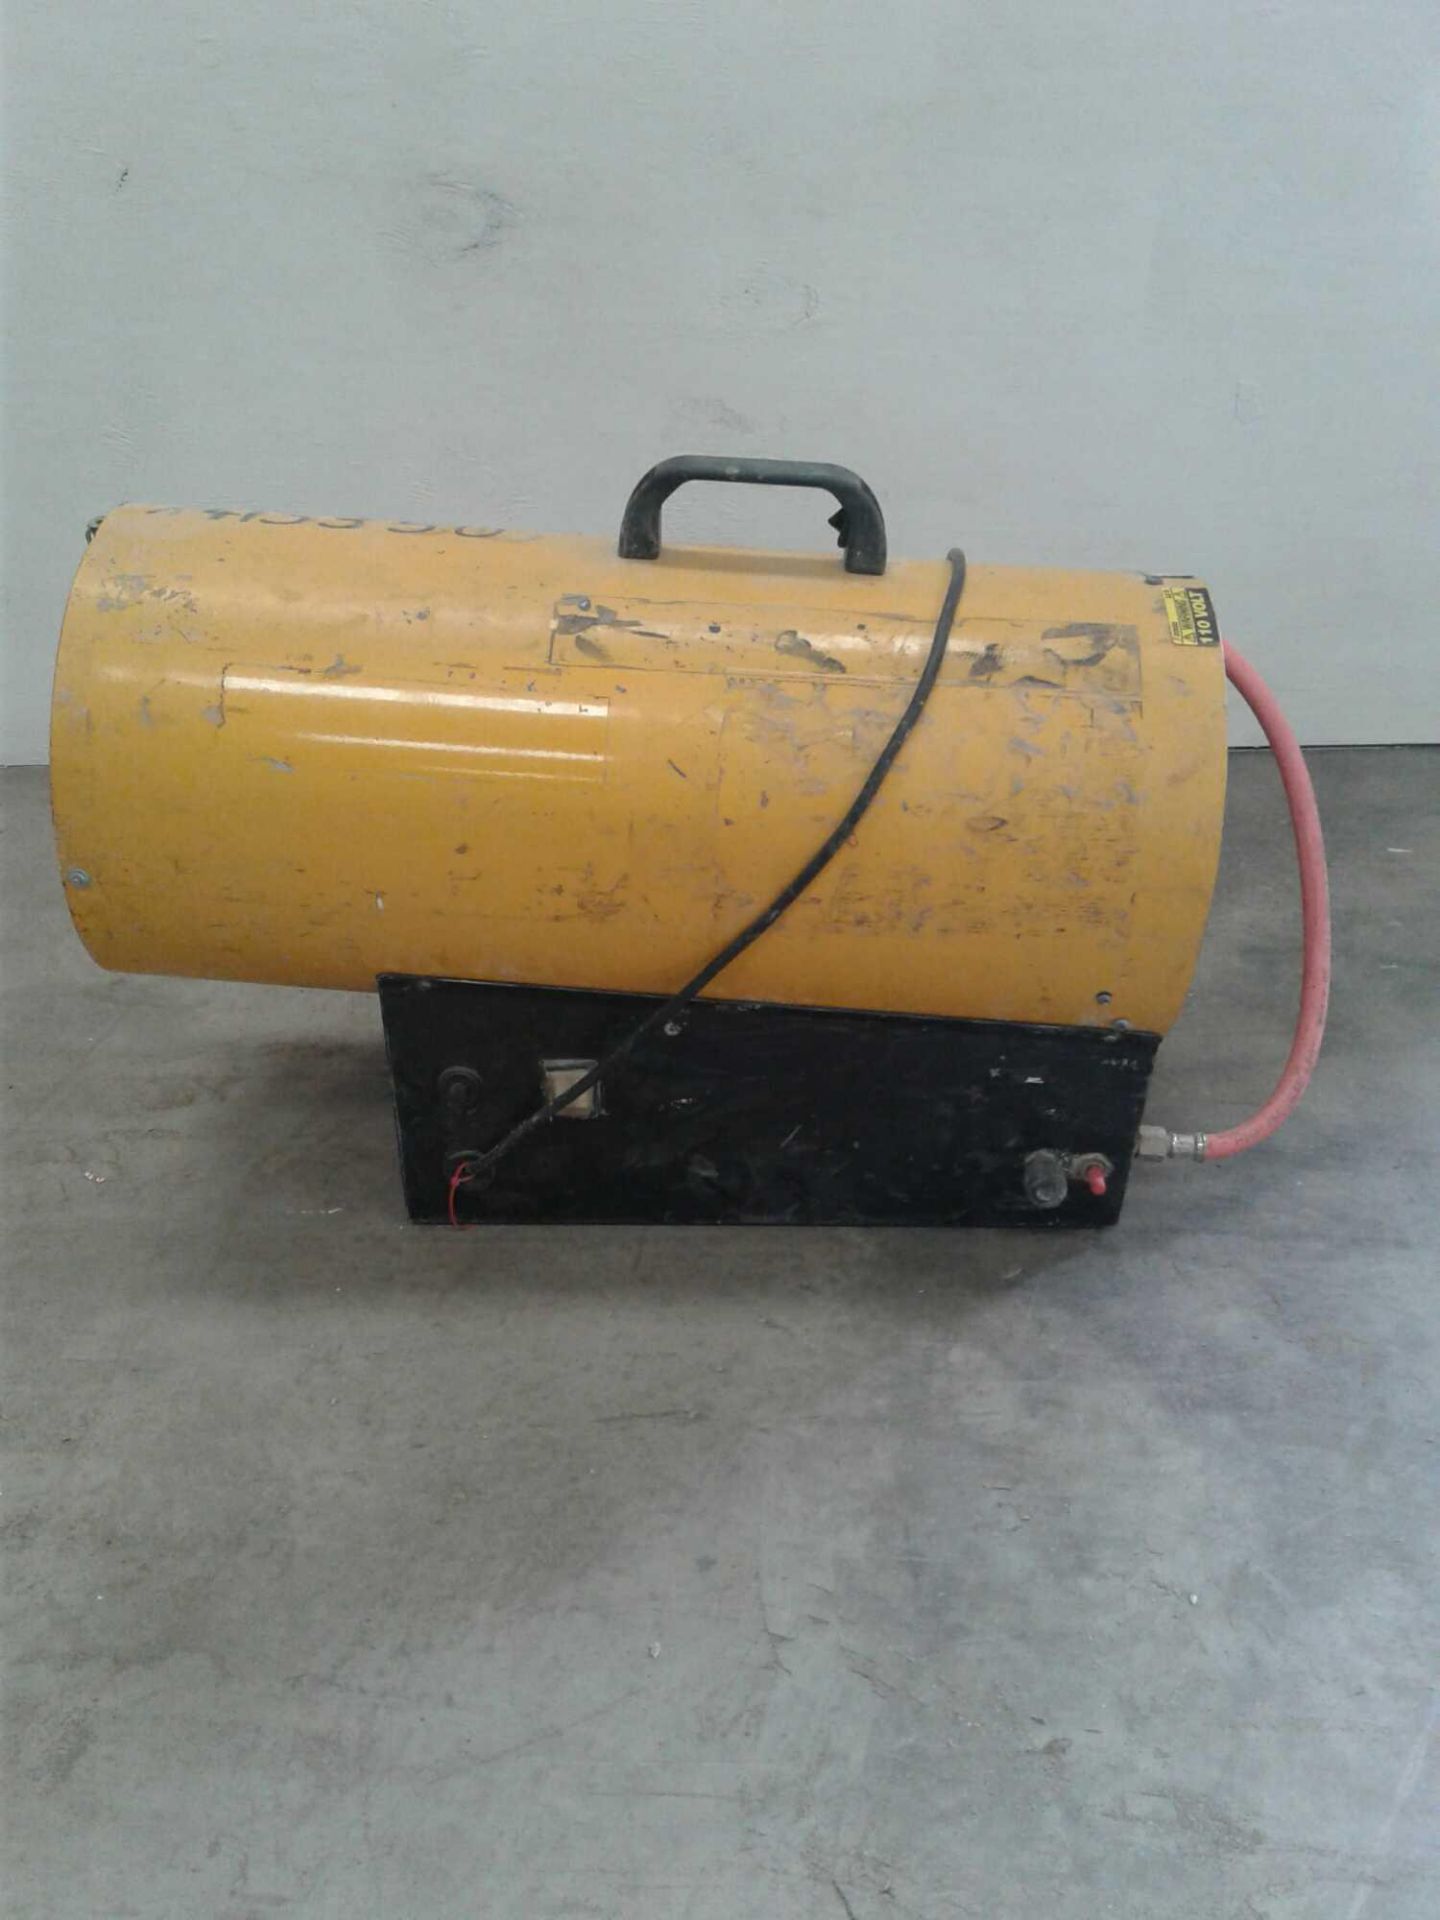 110v rocket heater - Image 2 of 2